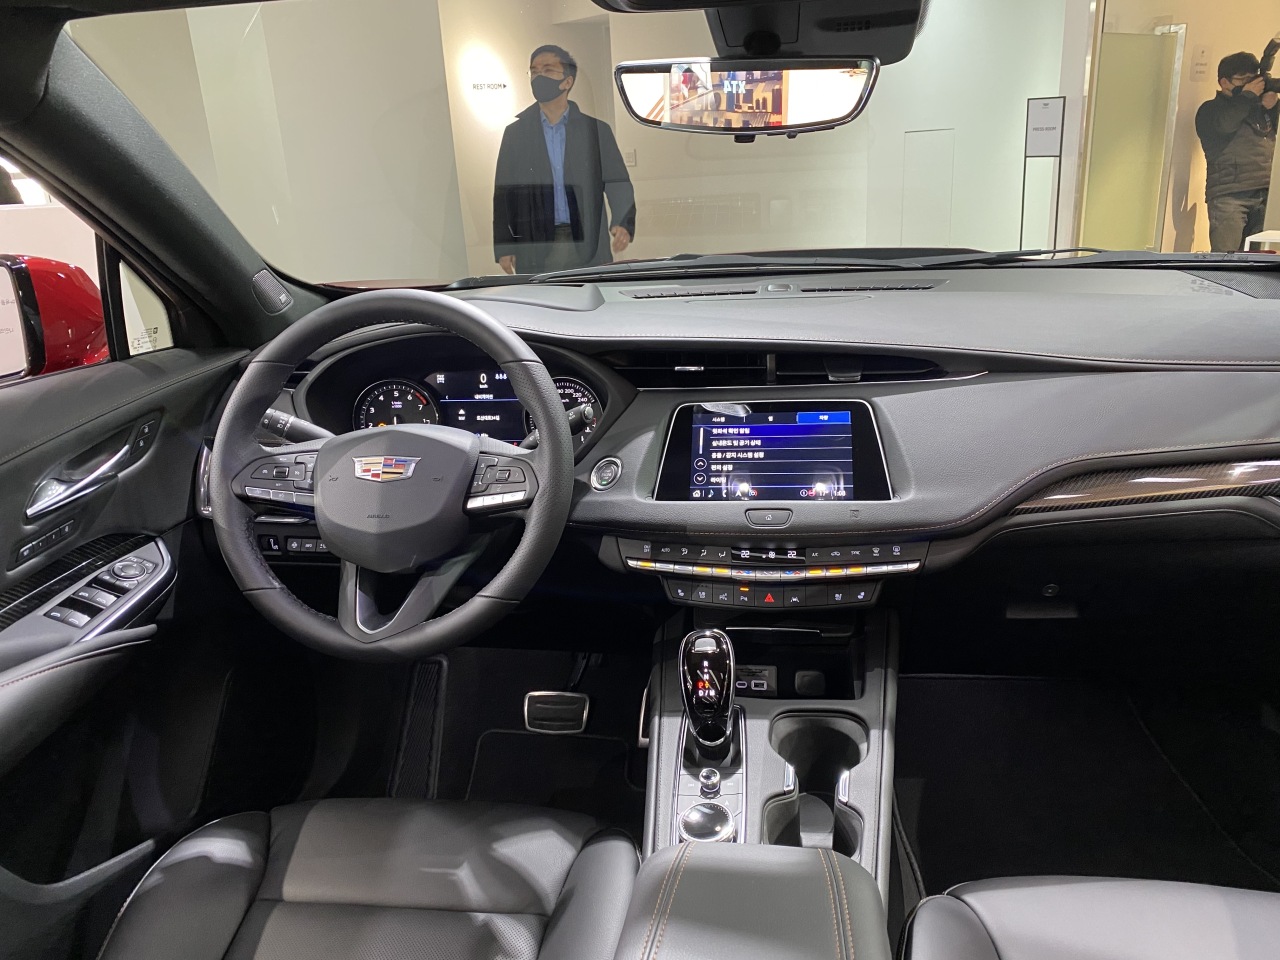 Inside the Cadillac XT4 (Jo He-rim/The Korea Herald)